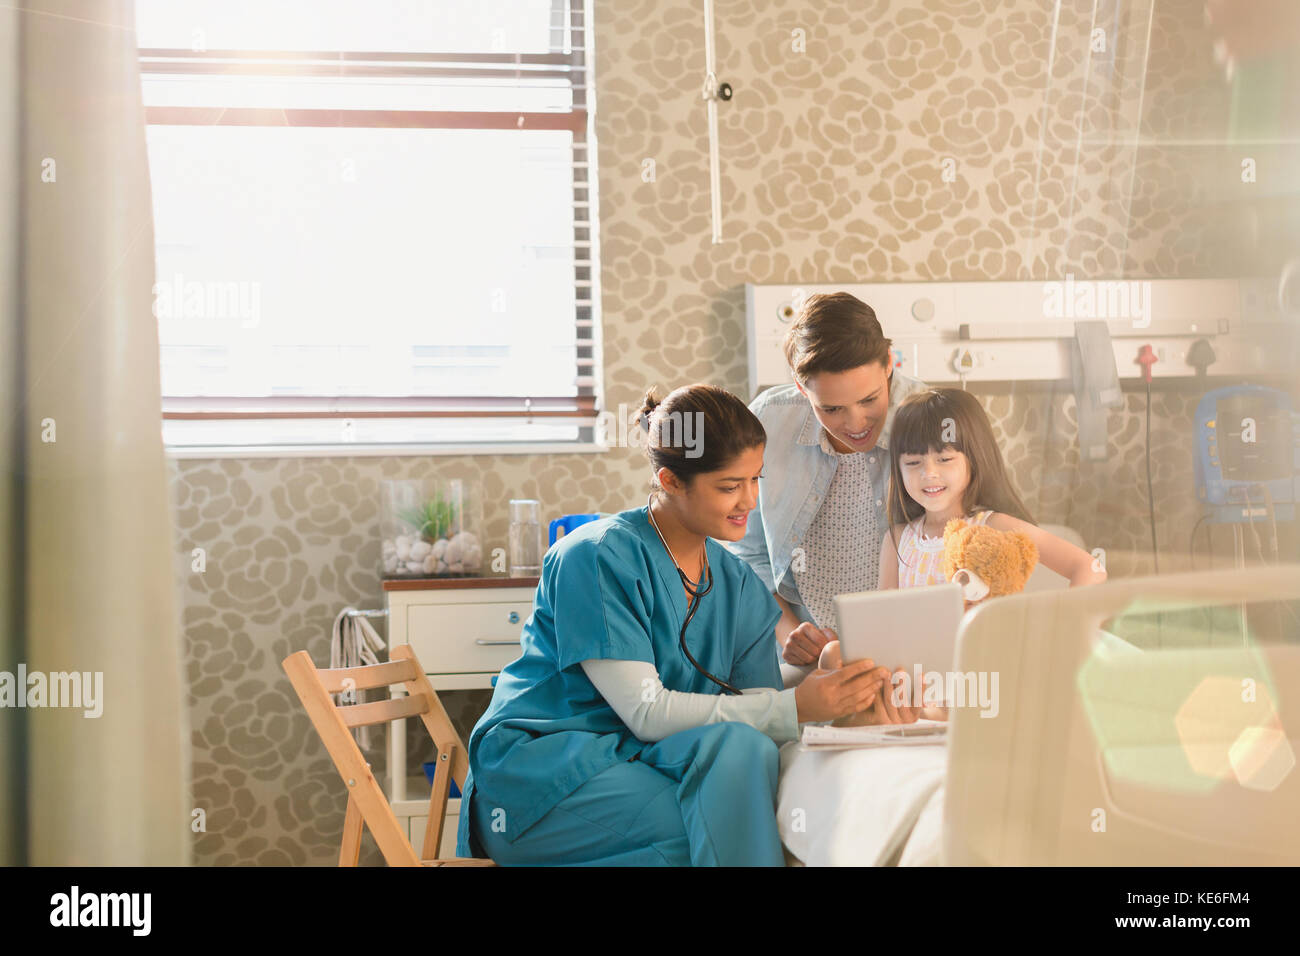 Krankenschwester zeigt digitale Tablette für Mädchen Patient und Mutter Im Krankenhauszimmer Stockfoto